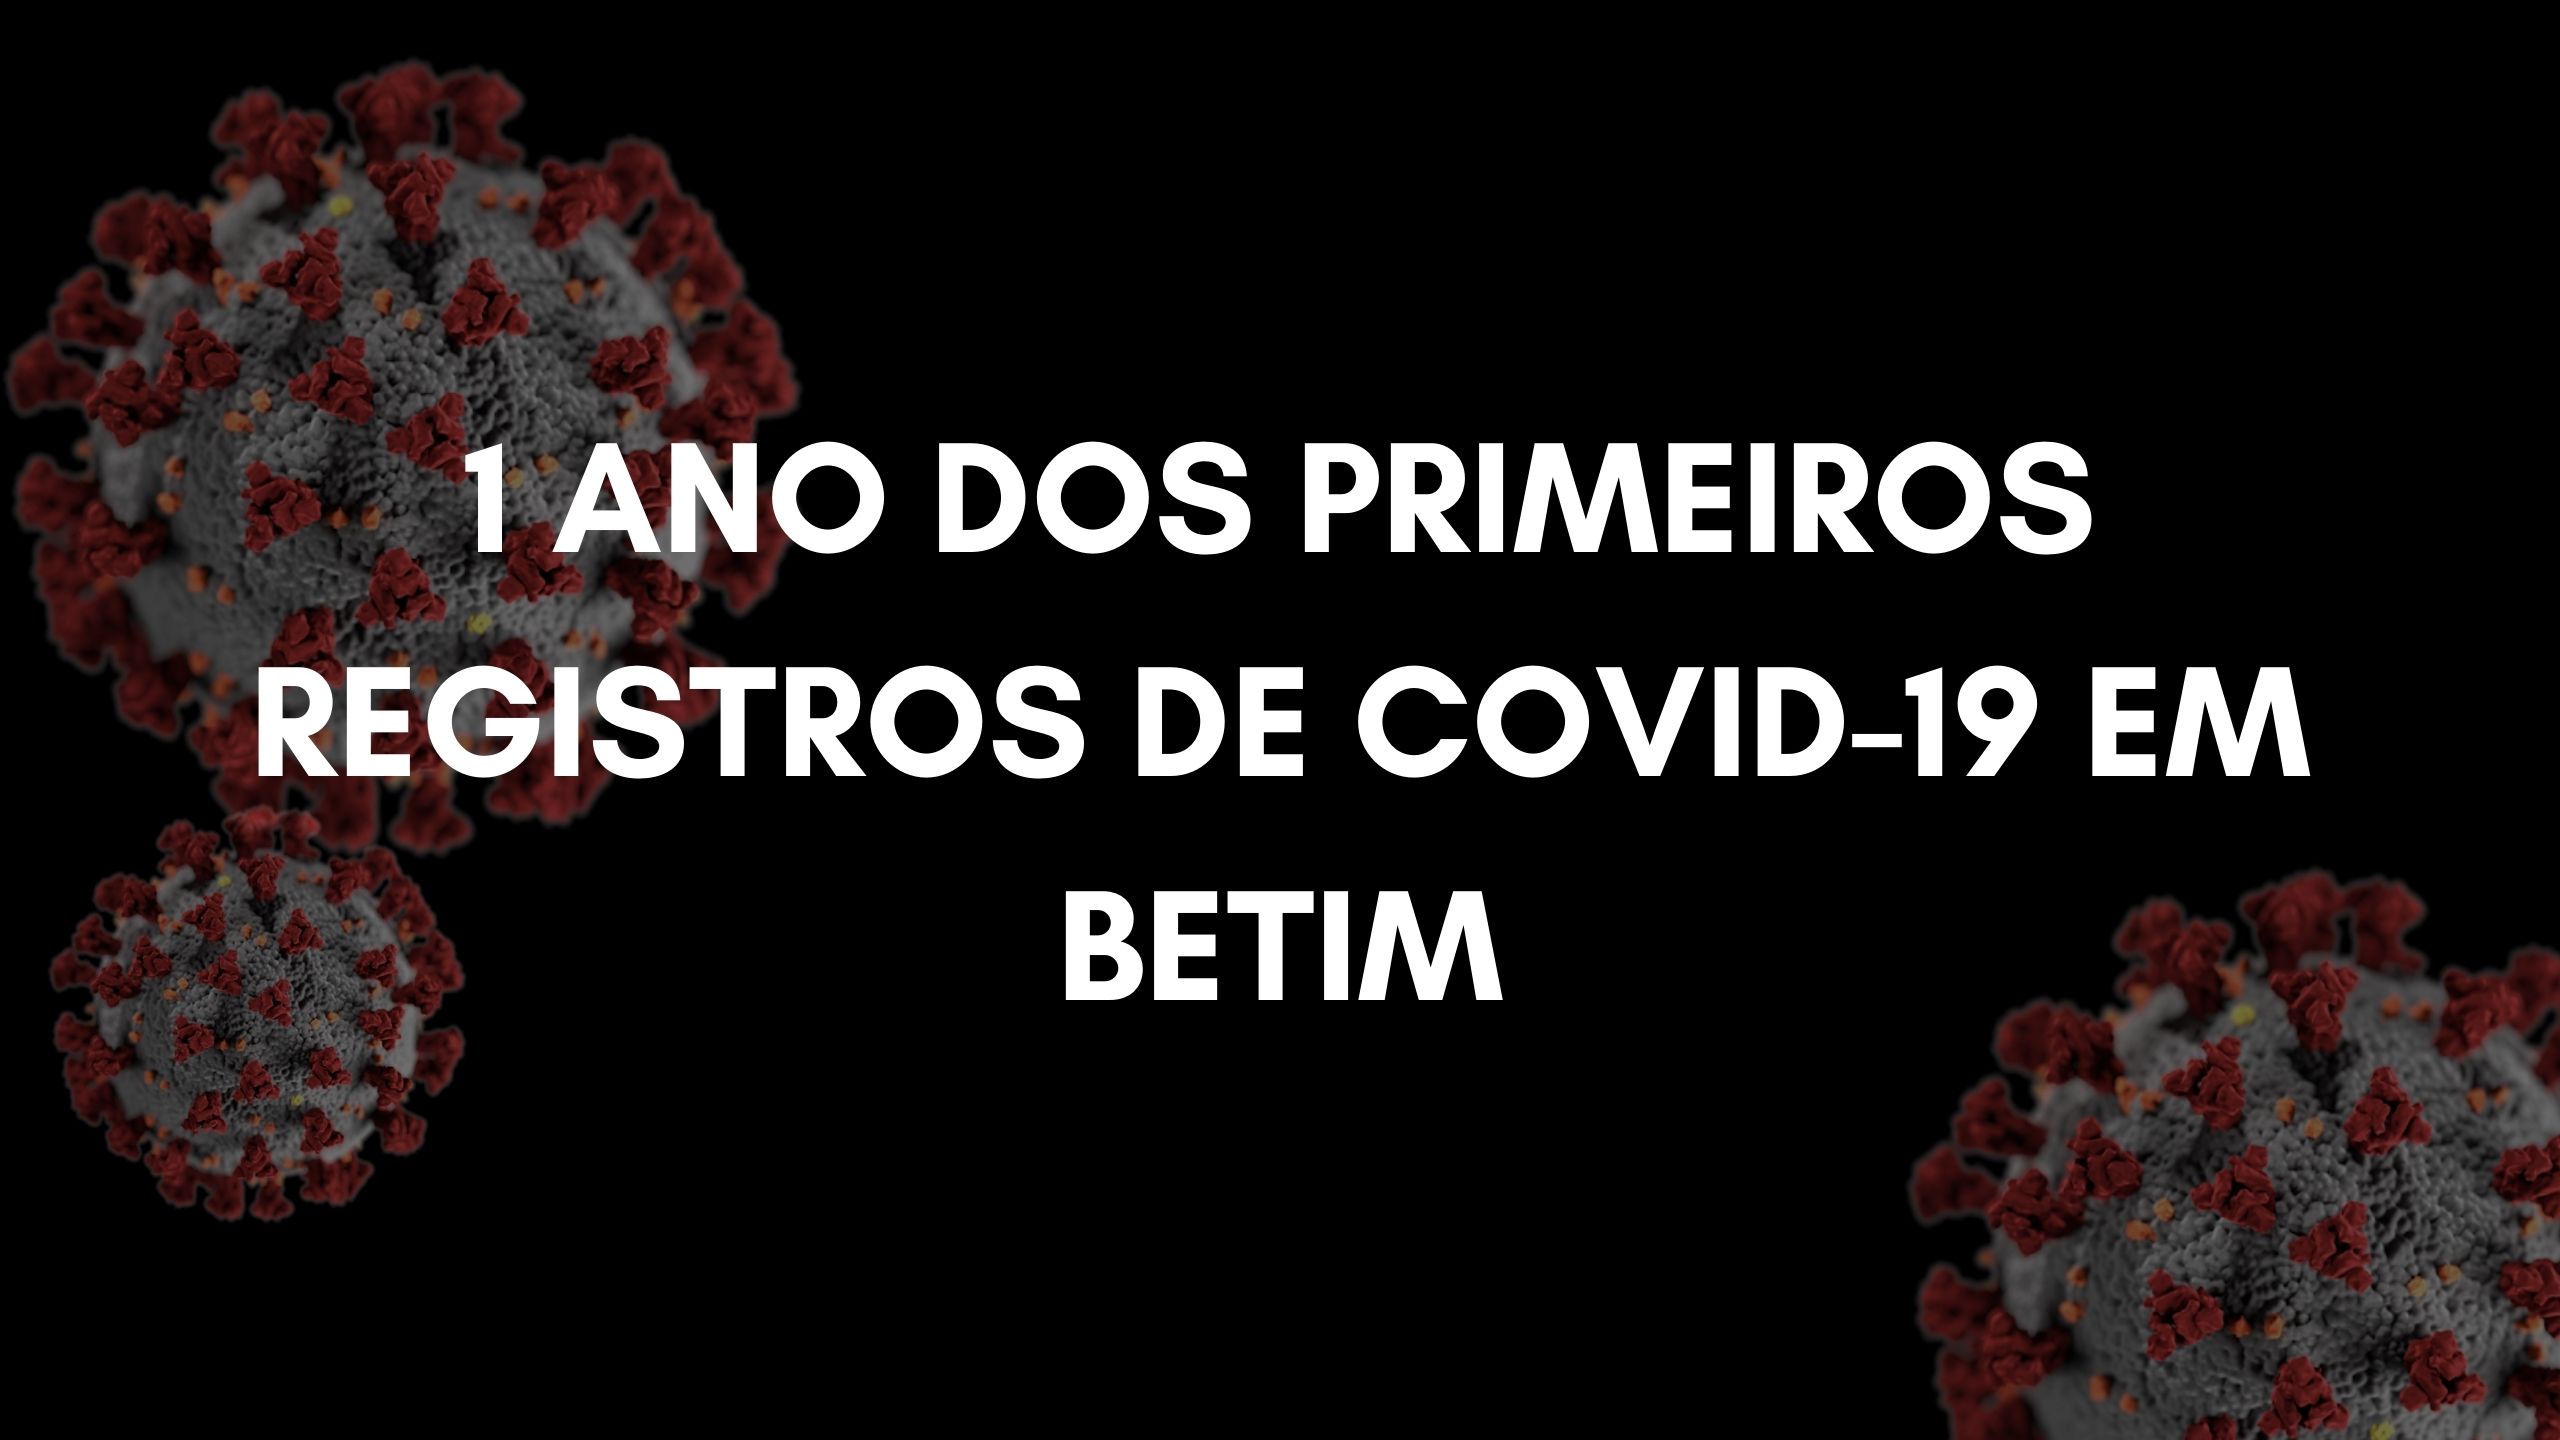 1 ano dos primeiros casos de covid-19 em Betim